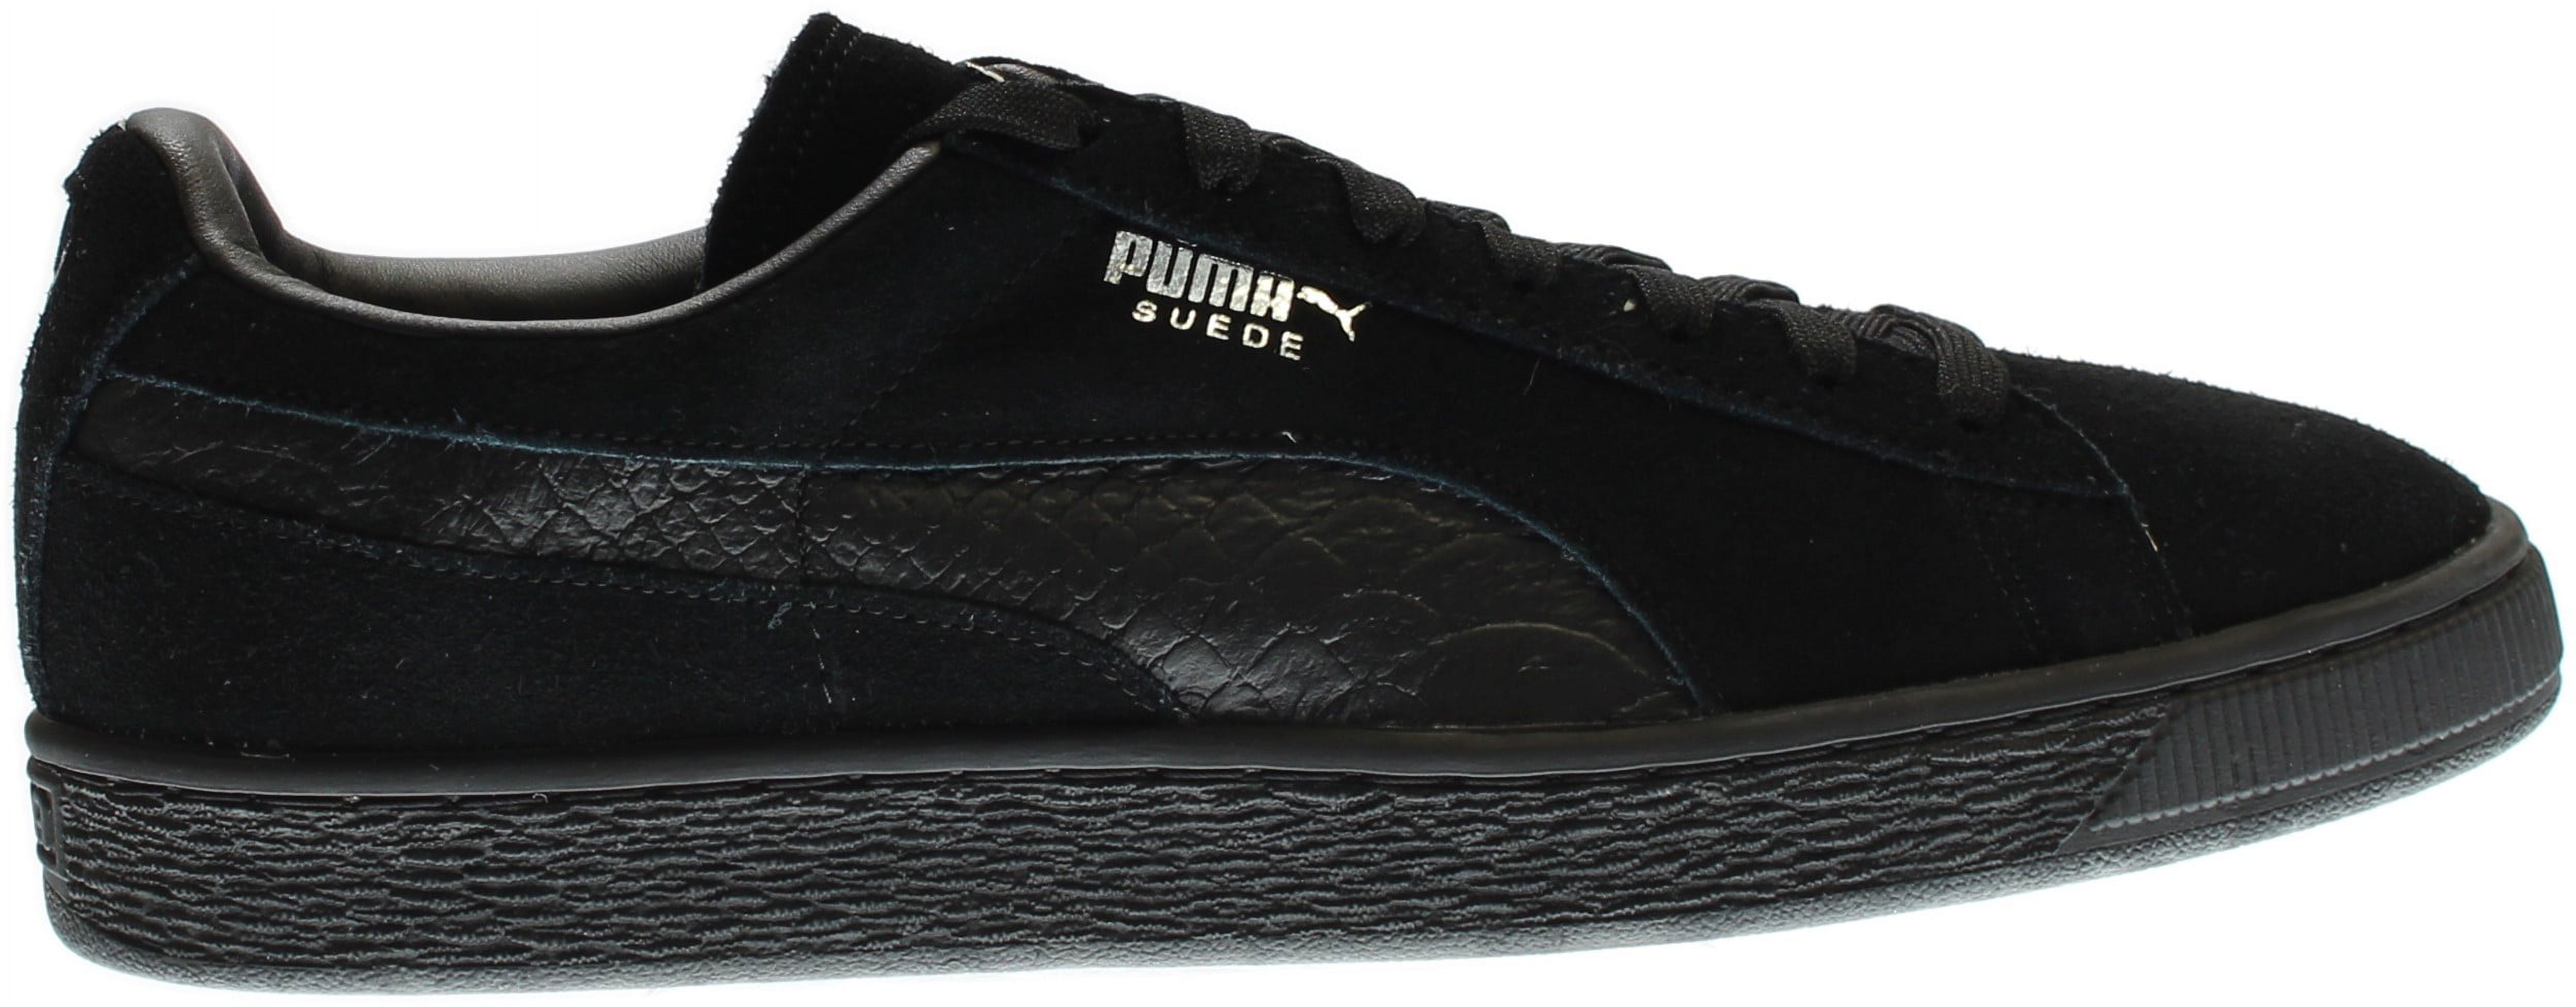 PUMA 363164-06 : Men's Suede Classic Mono Reptile Fashion Sneaker, Black (Puma Black-puma Silv, 10.5 D(M) US) - image 2 of 7